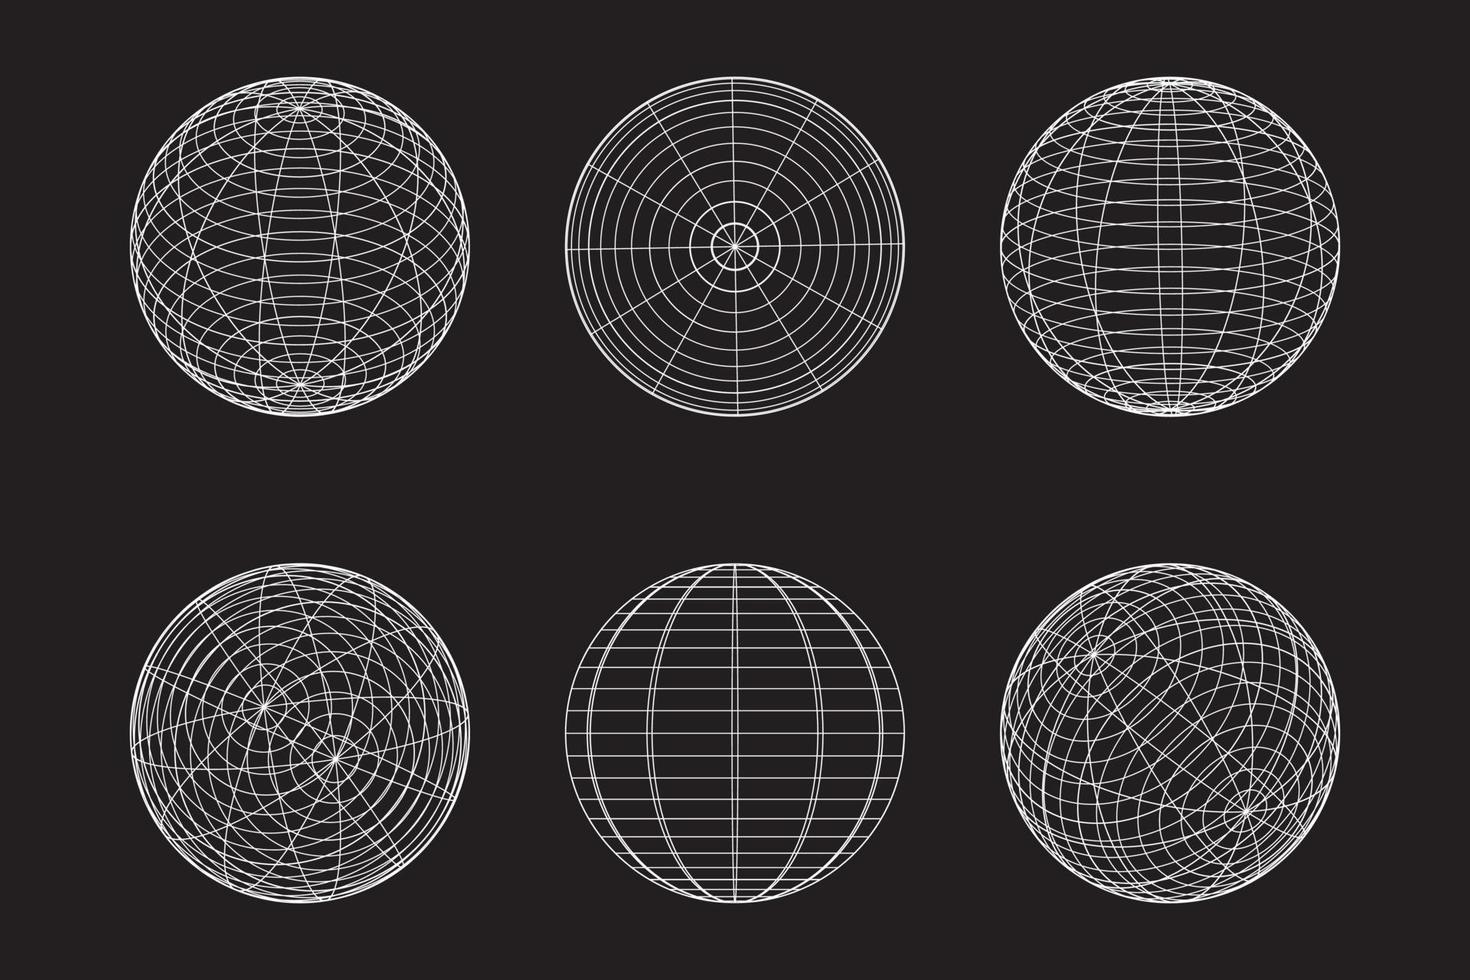 forma geométrica de esfera diseño 3d en estilo tecnológico. Ilustración de vector de círculo abstracto.